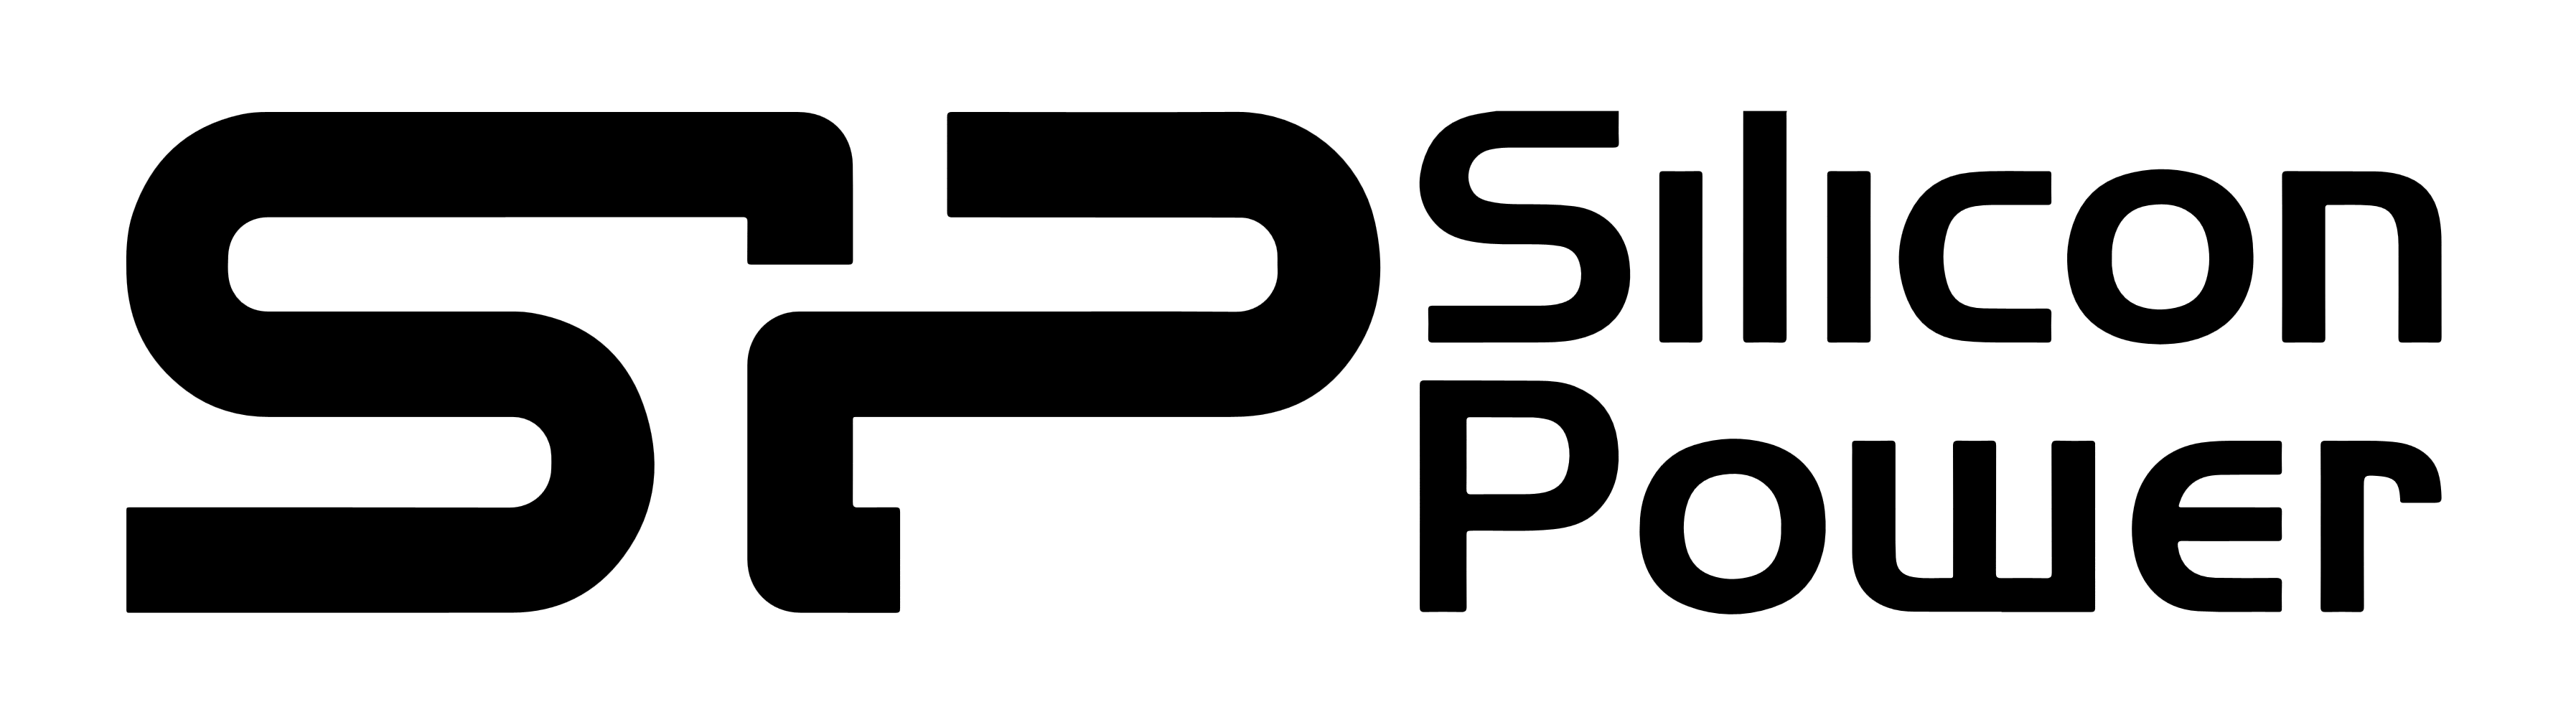 Silicon Power logo, logotype